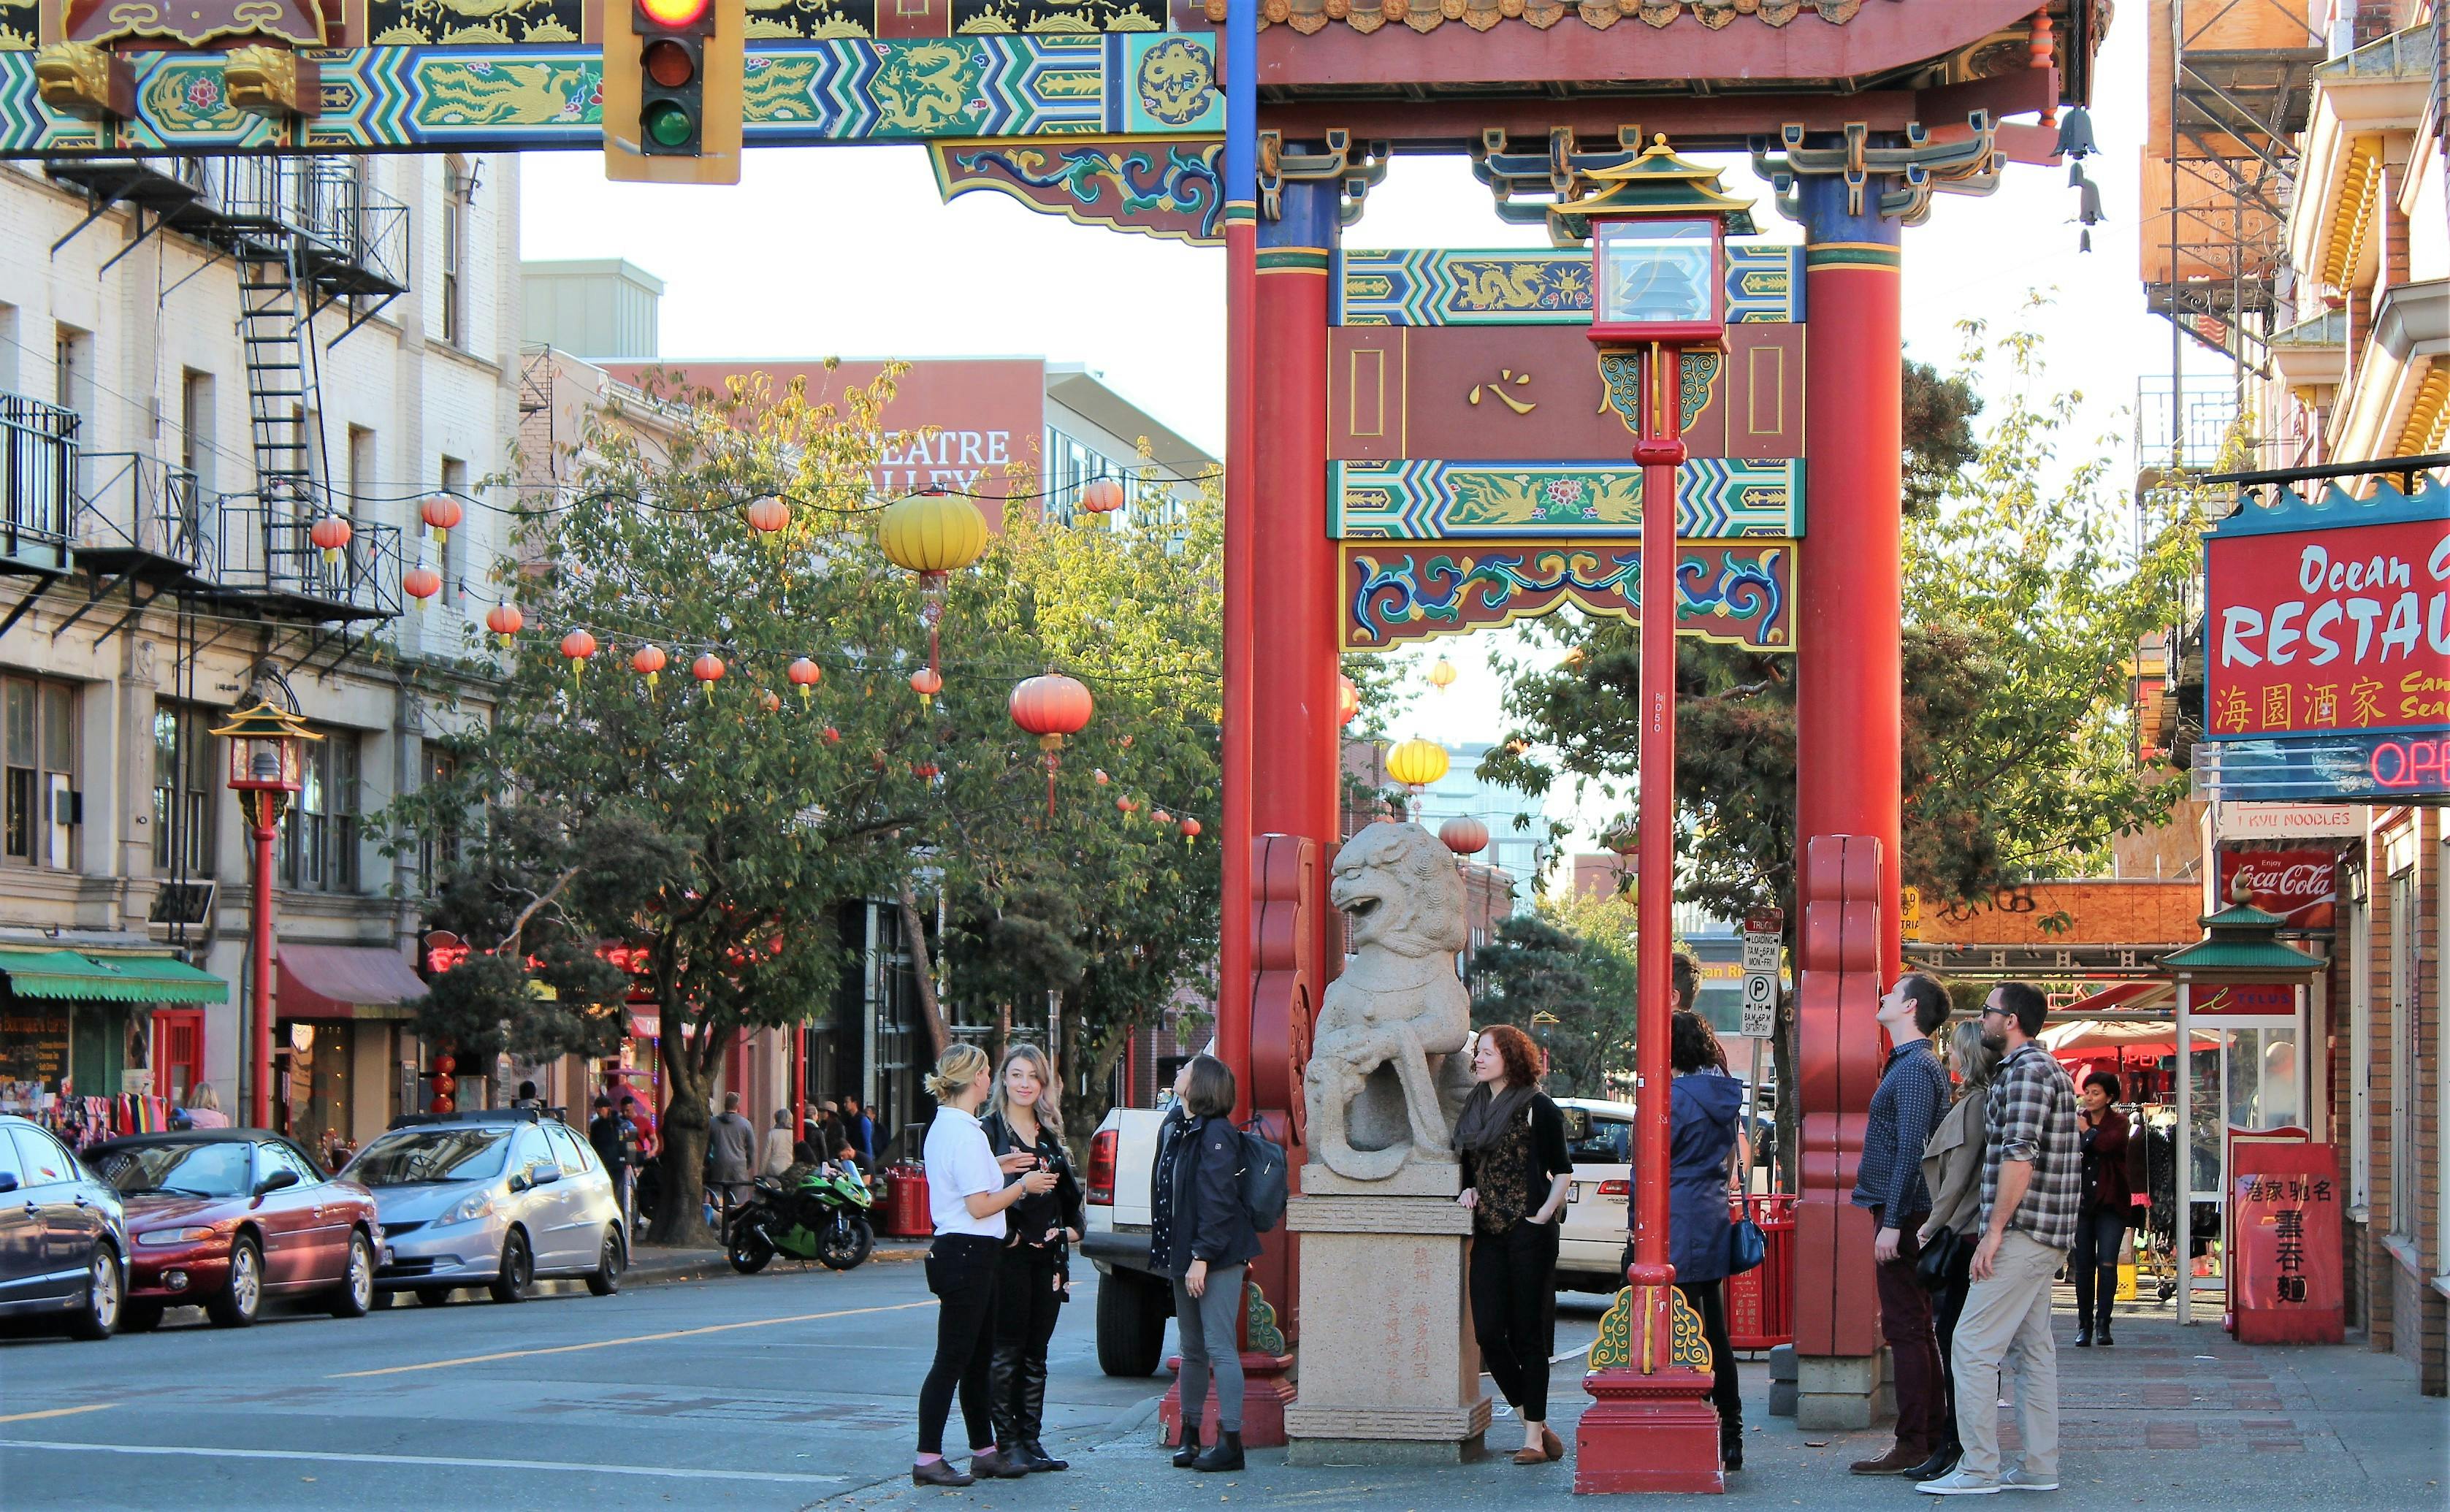 Tour moderno e escondido em Chinatown com visita ao centro histórico